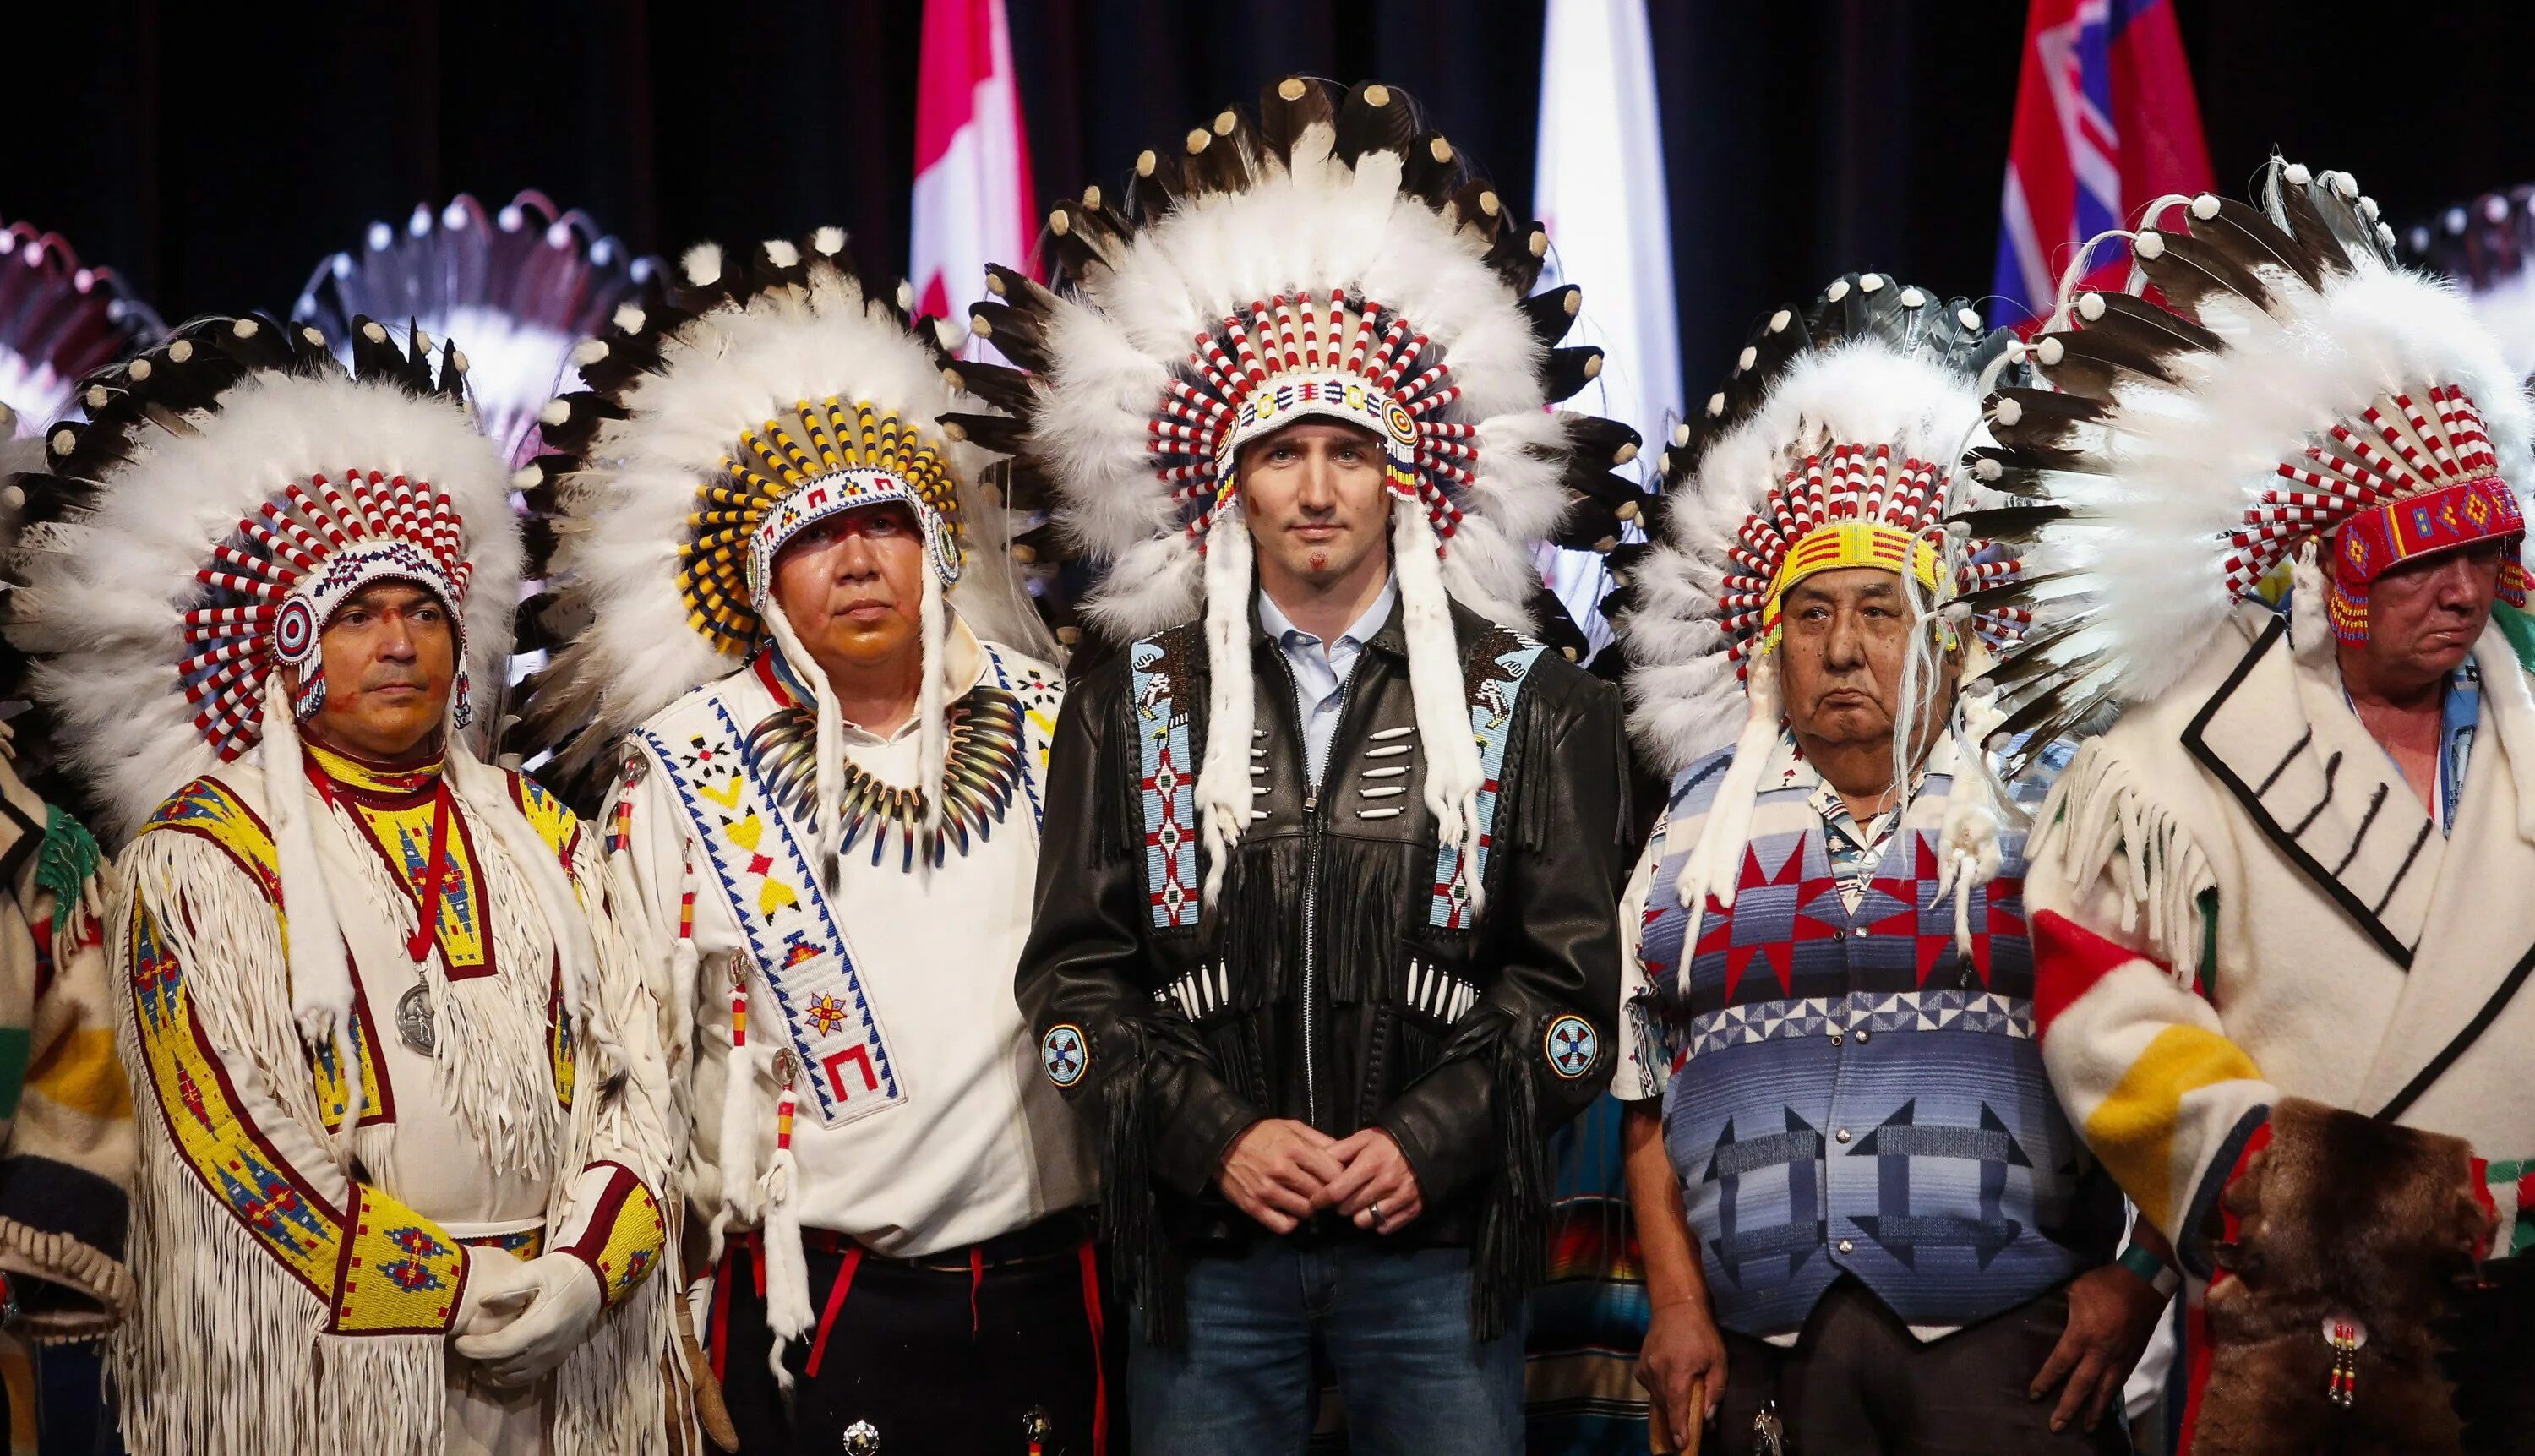 Коренная нация северной америки. Индейцы Канады народы Канады. Канада индейцы алеуты. Северные индейцы Канады. Коренные жители Канады индейцы.